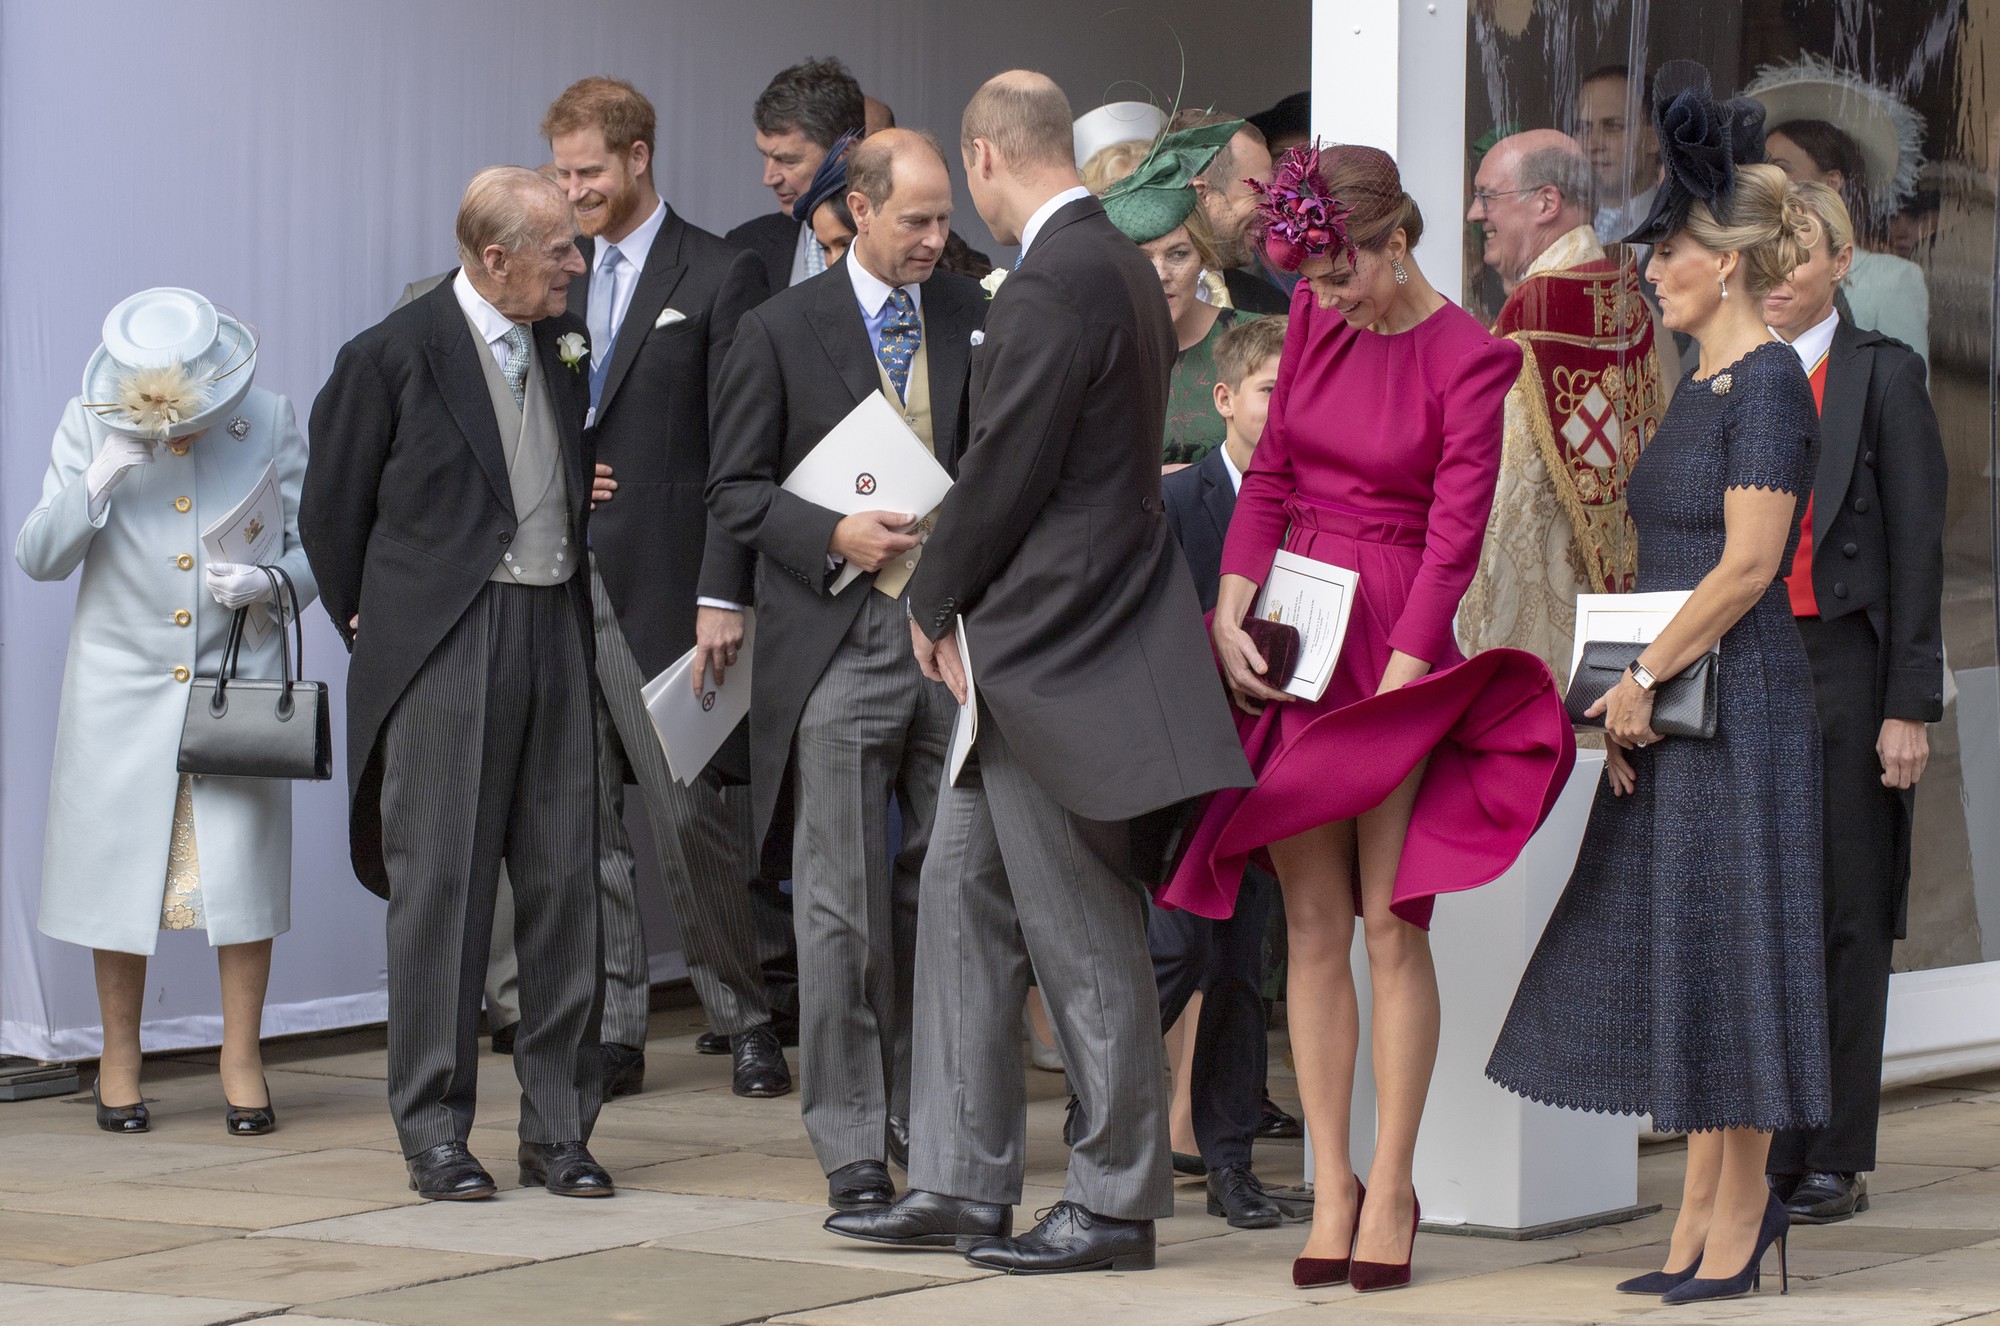 Ít ai cẩn thận như phụ nữ Hoàng gia Anh chuẩn bị kỹ lưỡng cho cả tình  huống tốc váy dở khóc dở cười